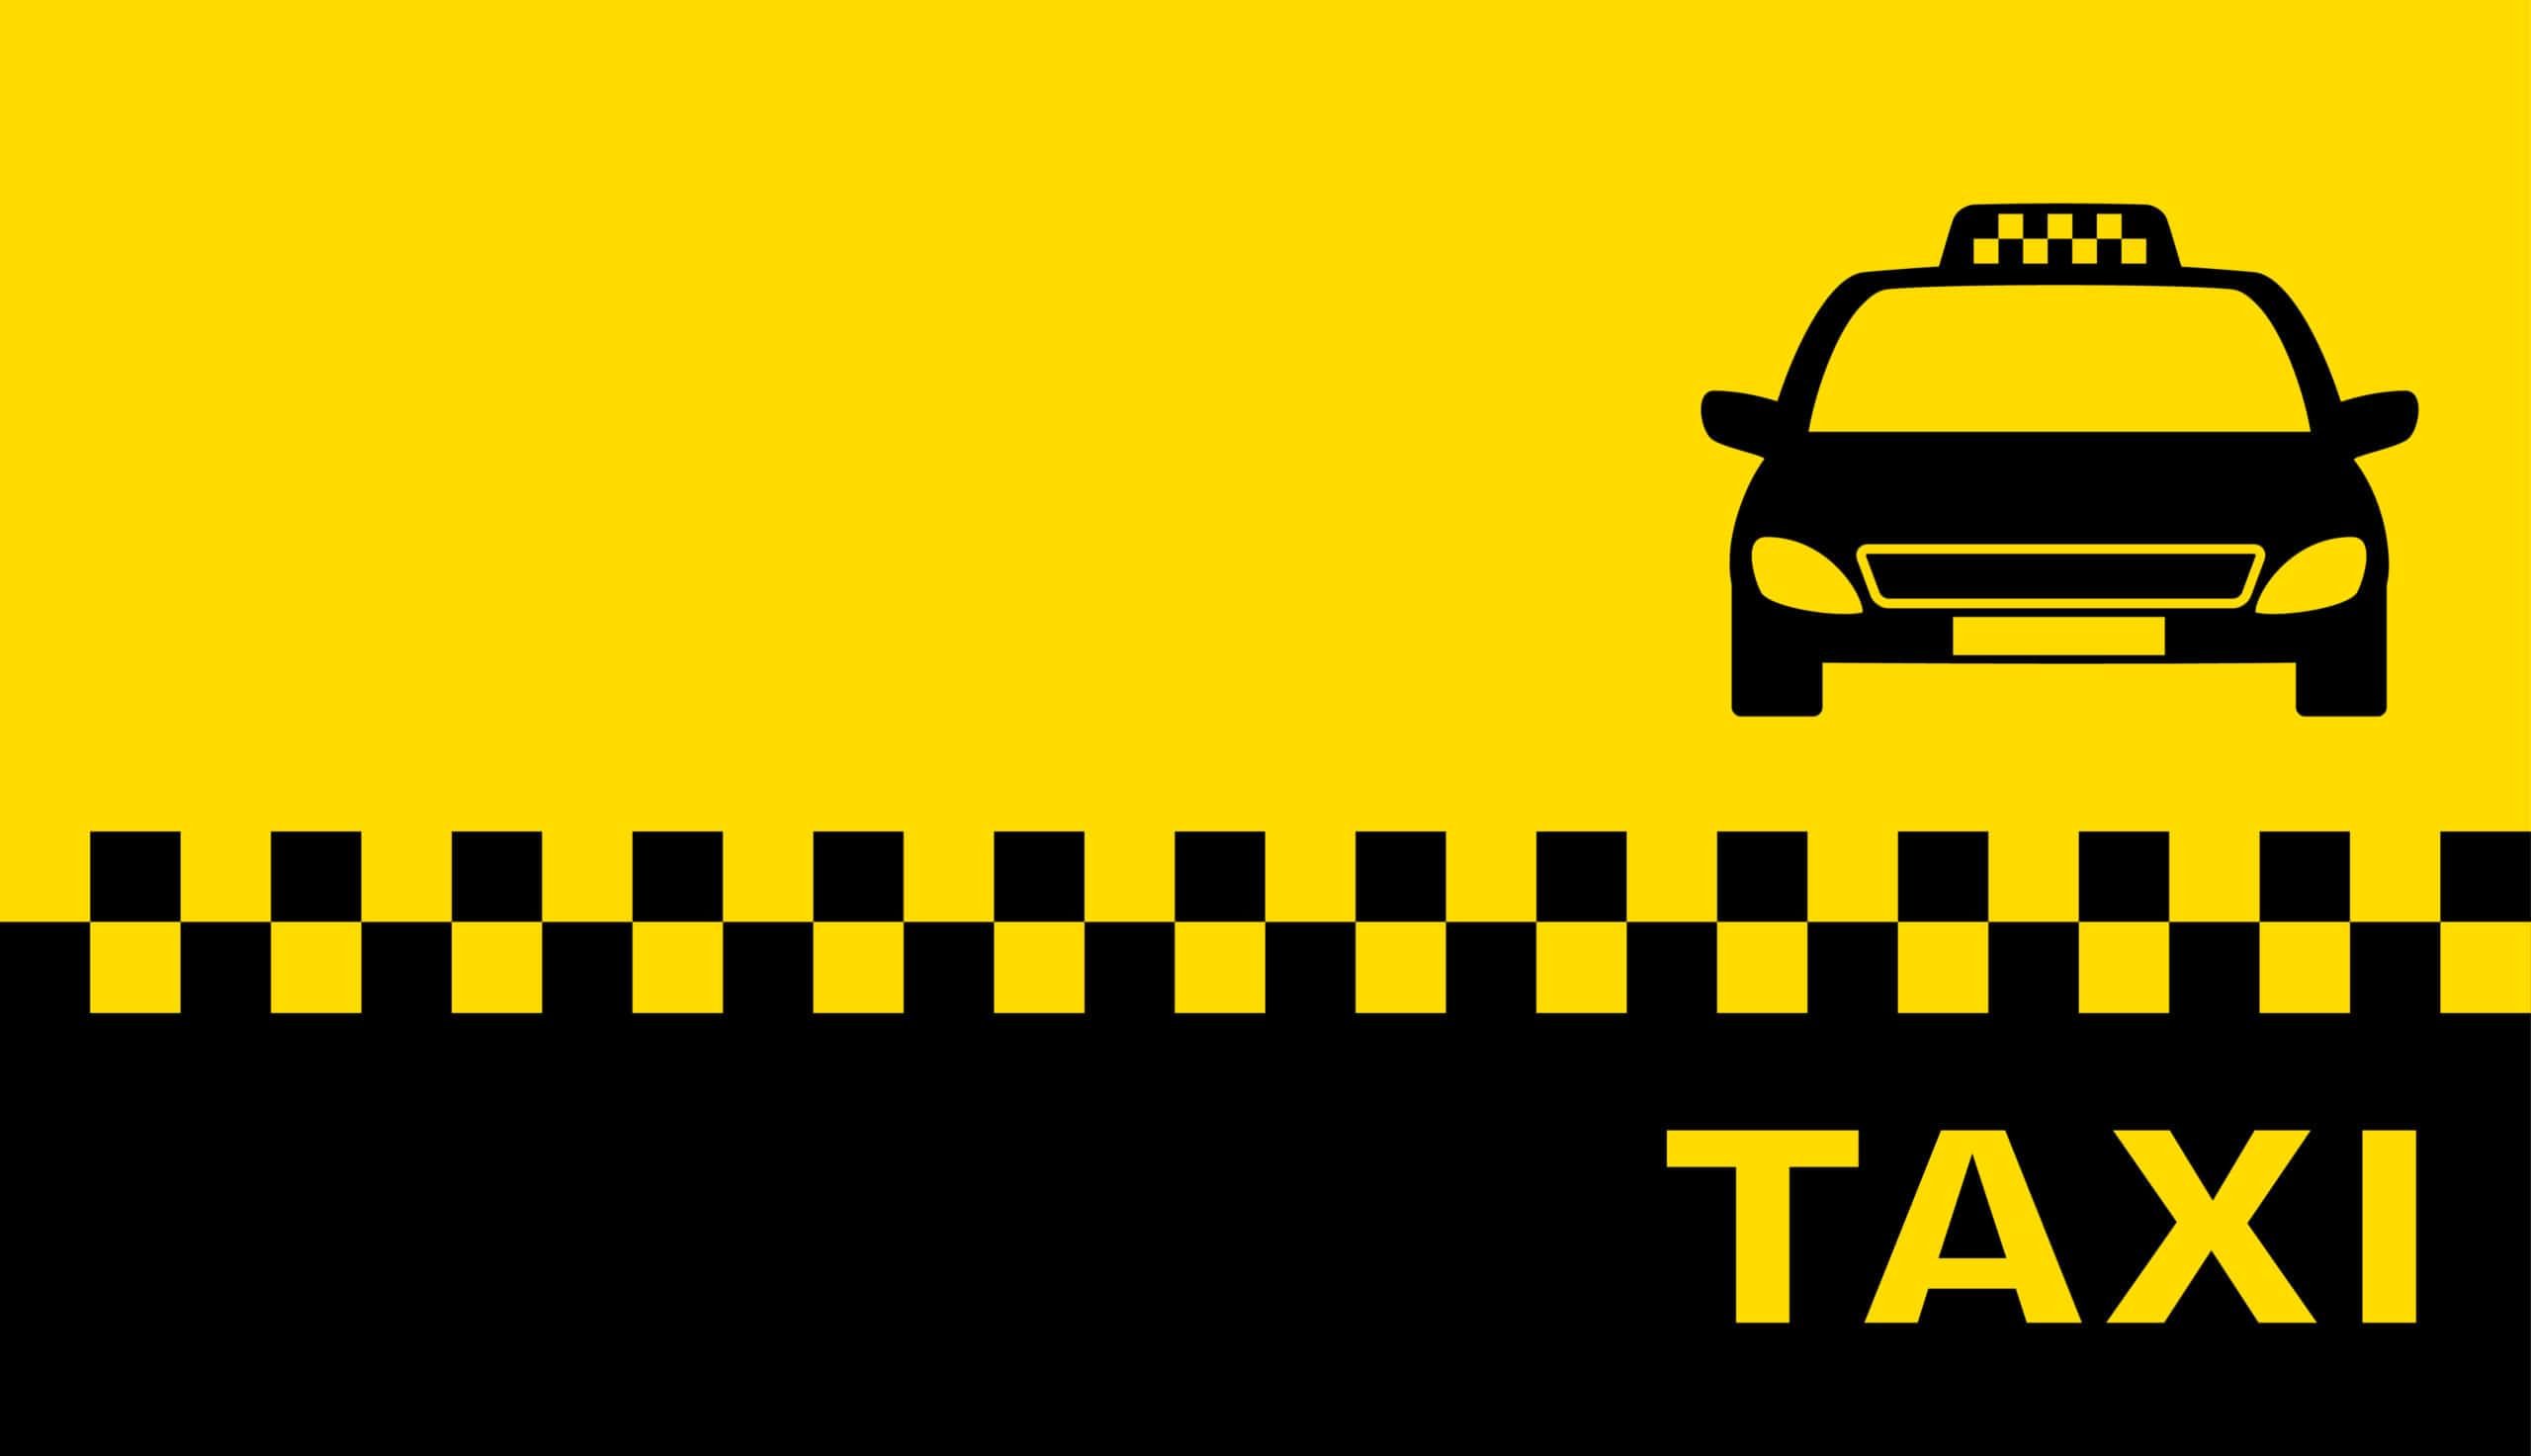 Записи таксиста. Визитка такси. Визитка такси шаблон. Шашечки такси. Визитки такси образцы.